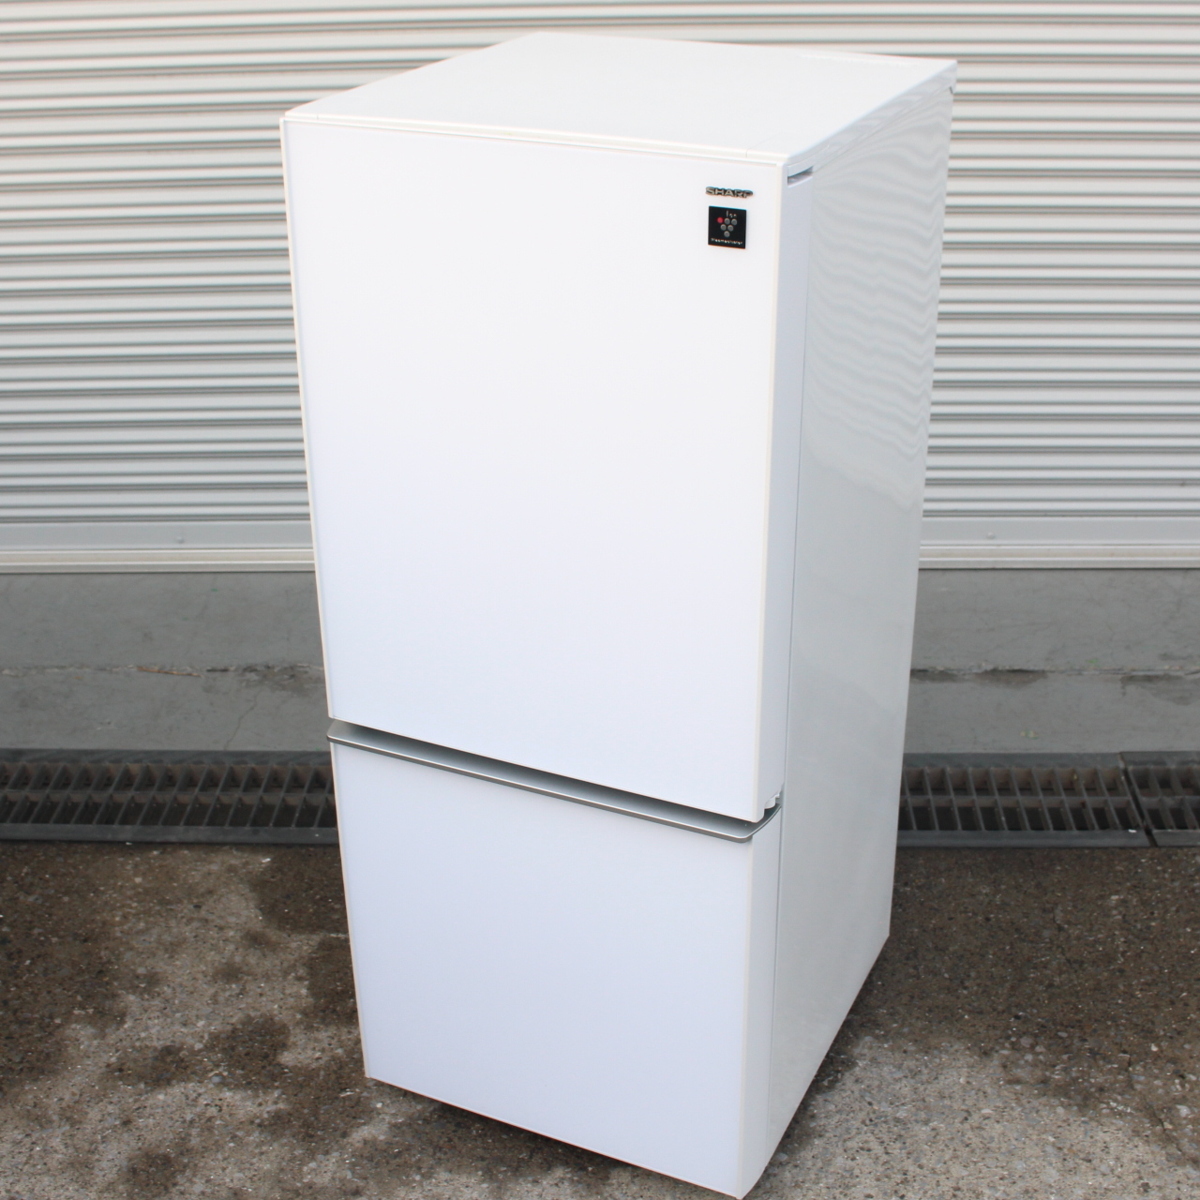 東京都町田市にて シャープ ノンフロン冷凍冷蔵庫 SJ-GD14C 2017年製 を出張買取させて頂きました。